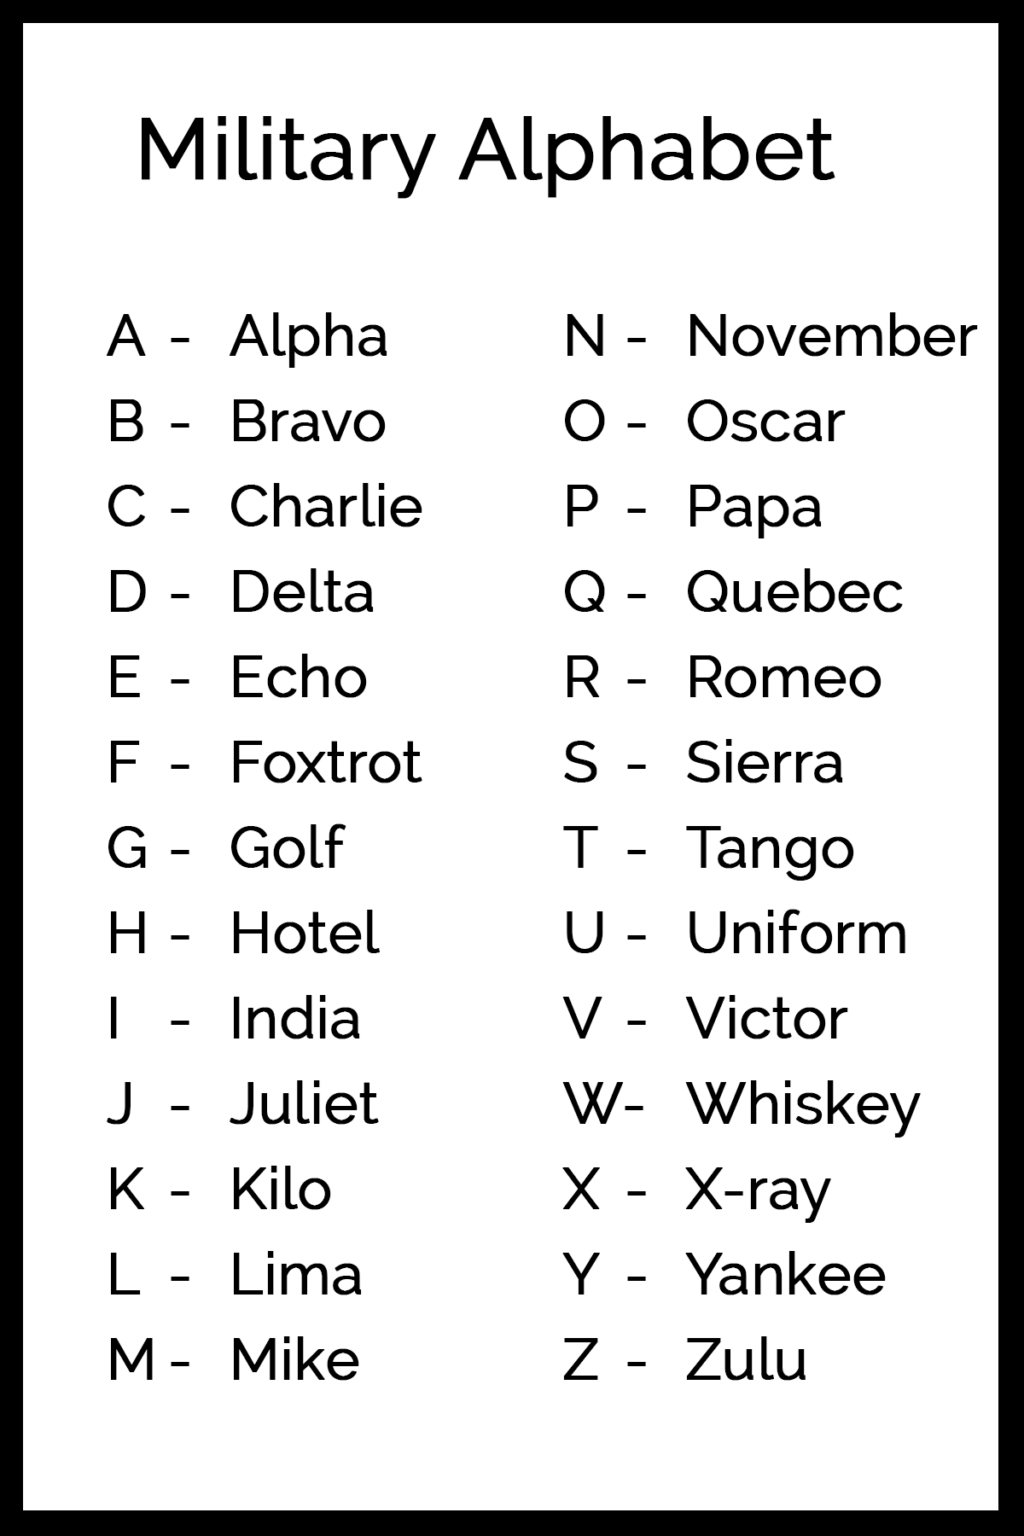 us-army-alphabet-code-military-alphabet